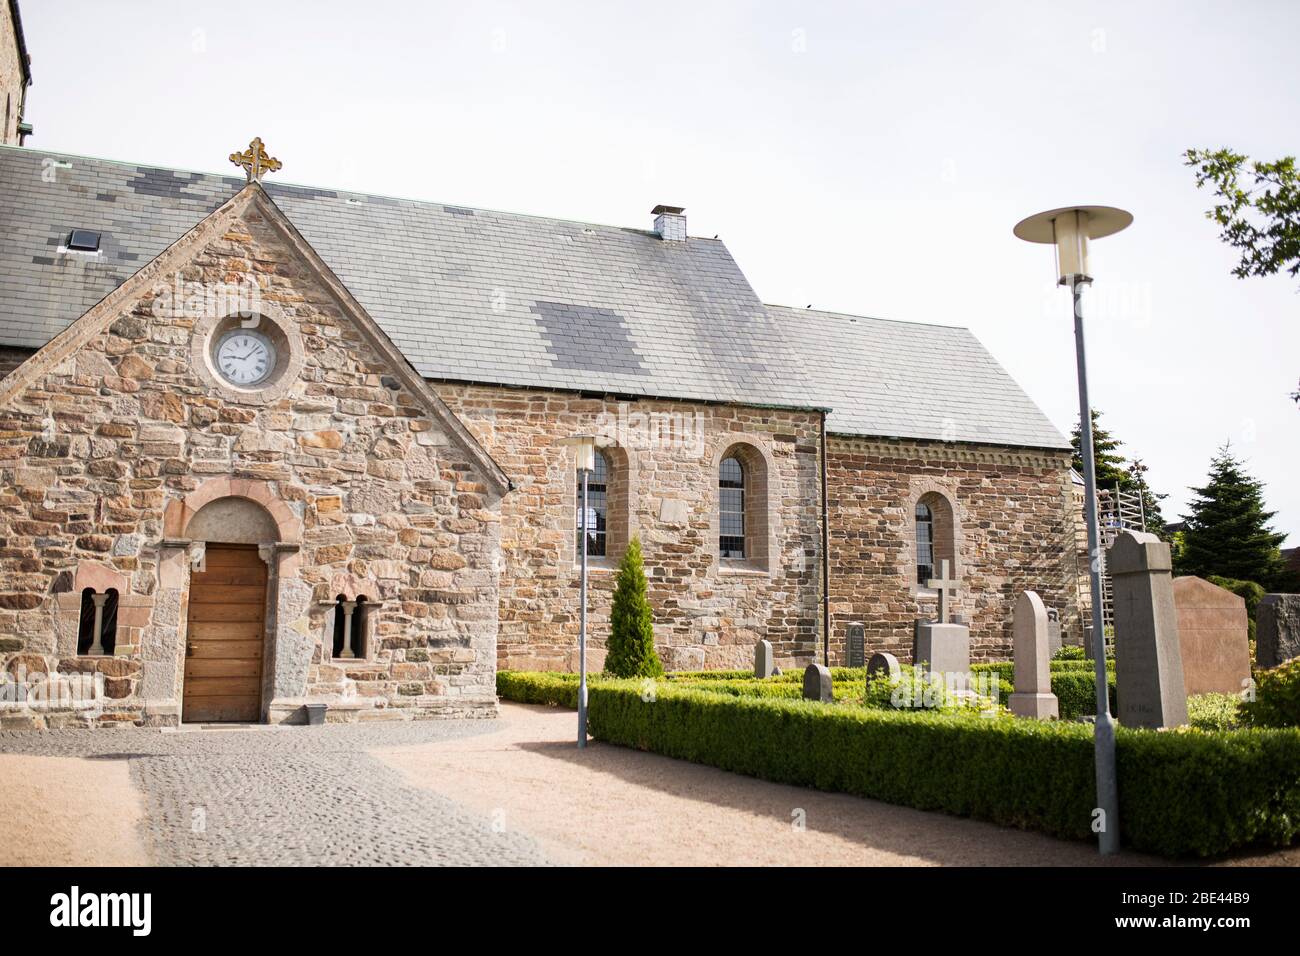 La AA-kirke (chiesa AA), una chiesa romanica di origini medievali, nella città di Aakirkeby sull'isola di Bornholm in Danimarca. Foto Stock